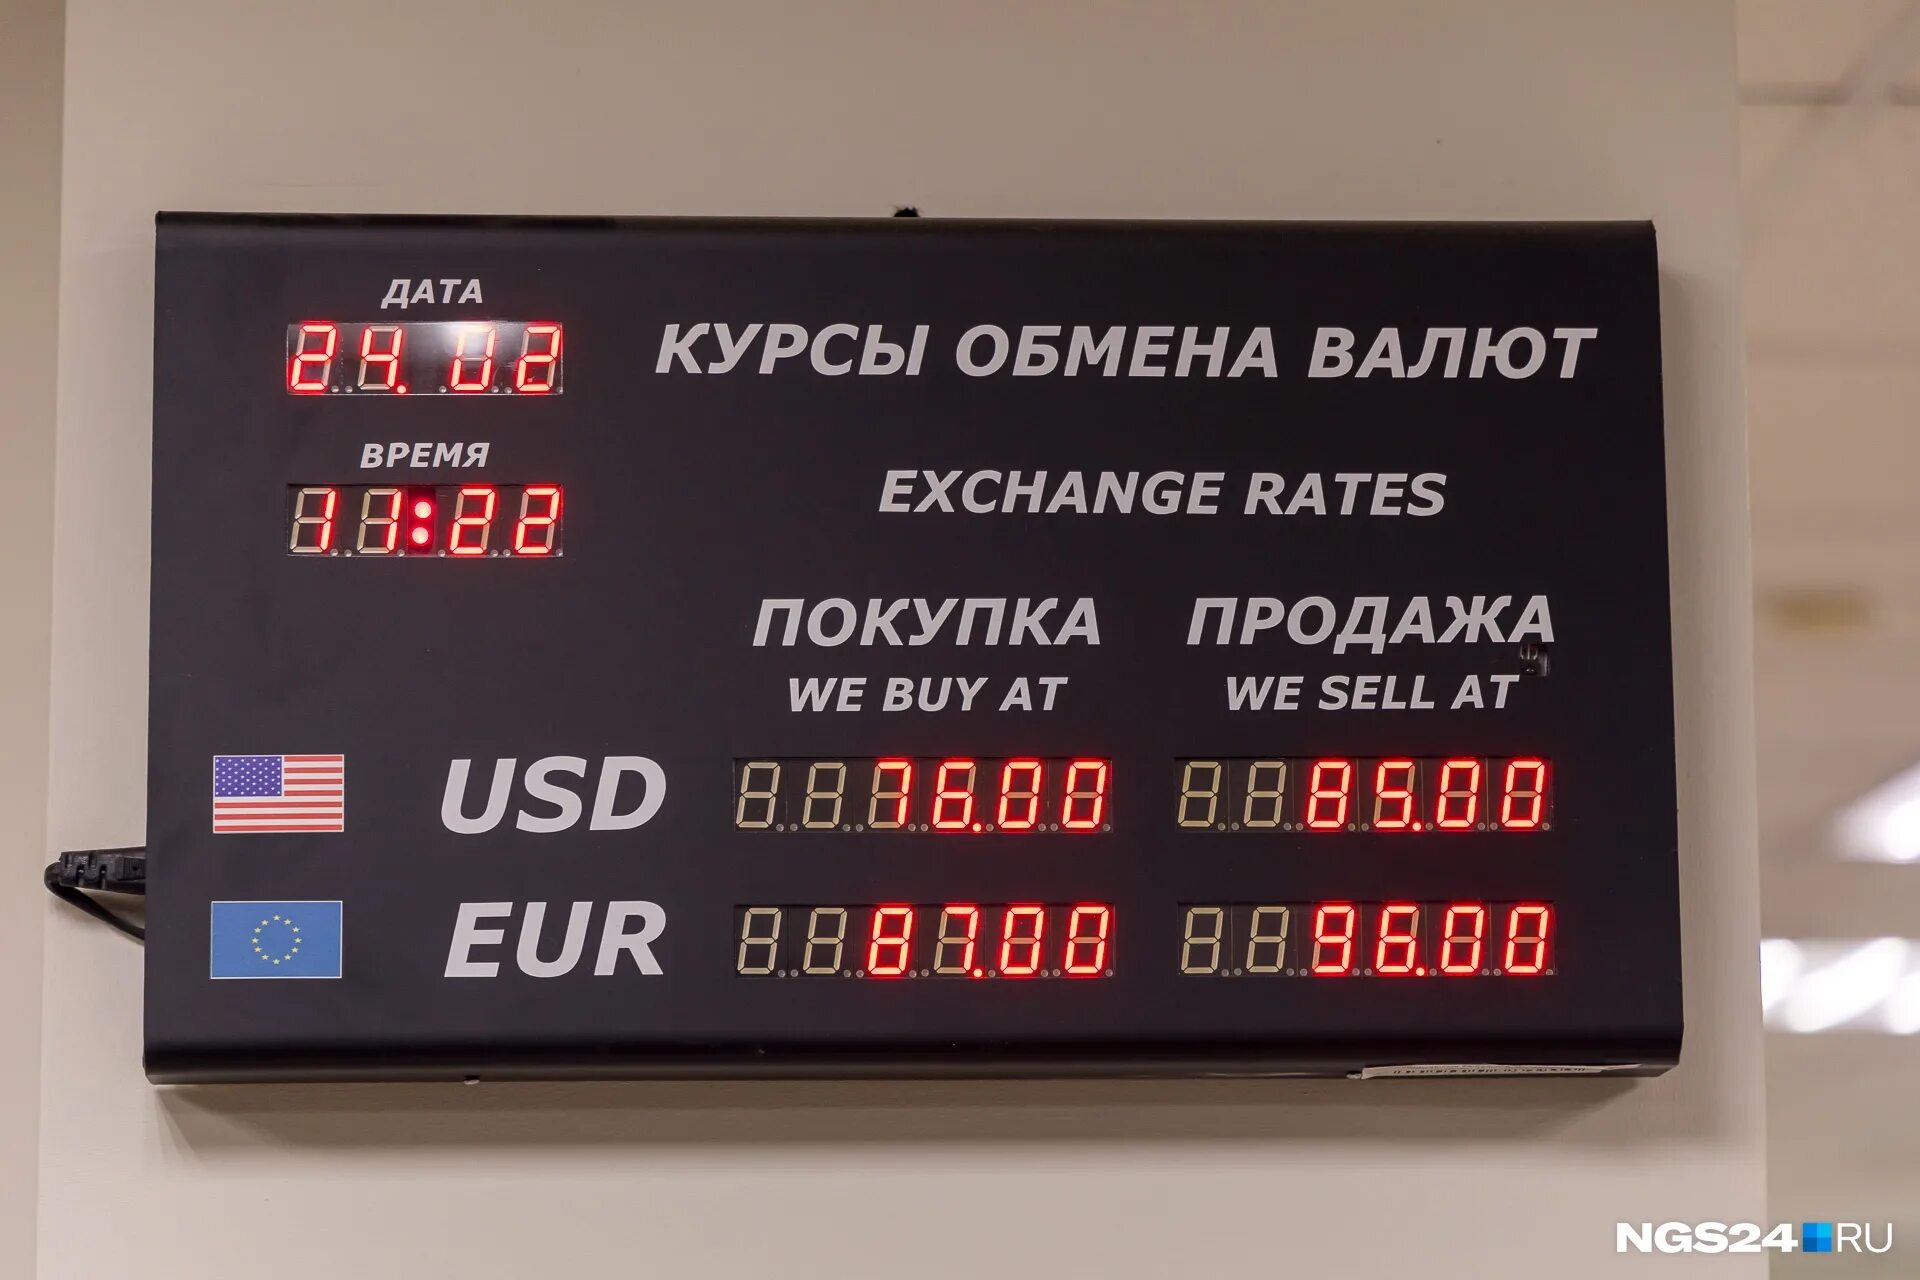 Обмен валют симферополь. Обменник валют. Курсы обмена валют. Обменные курсы валют. Размен валюты.